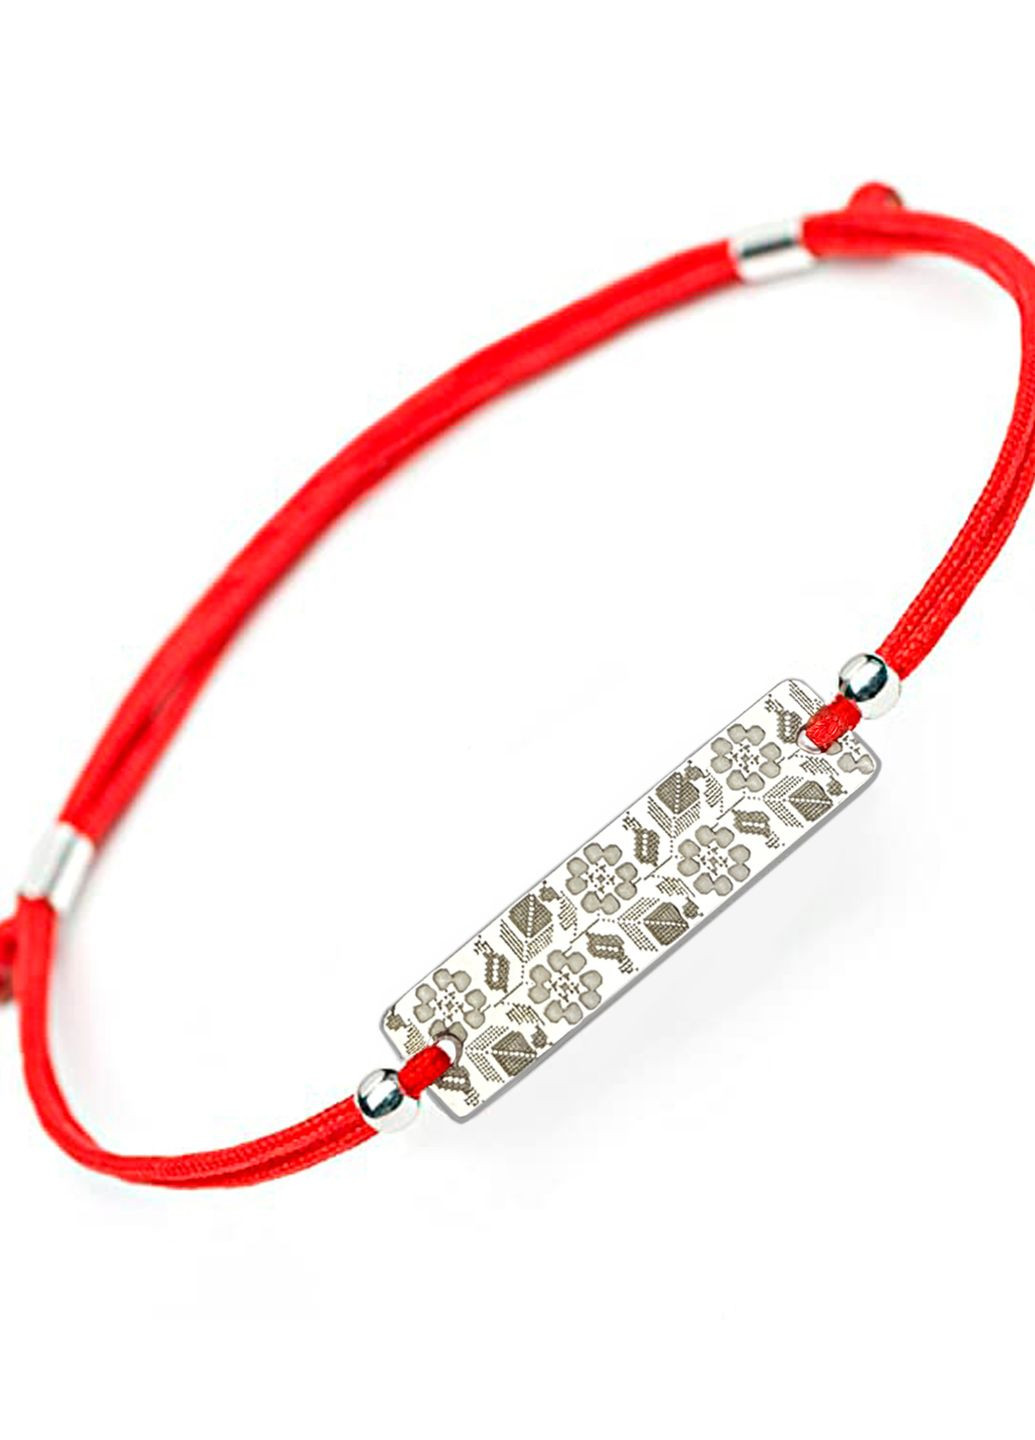 Срібний браслет Вишиванка на шнурку червона «Луганська область» регулюється Family Tree Jewelry Line (266038529)